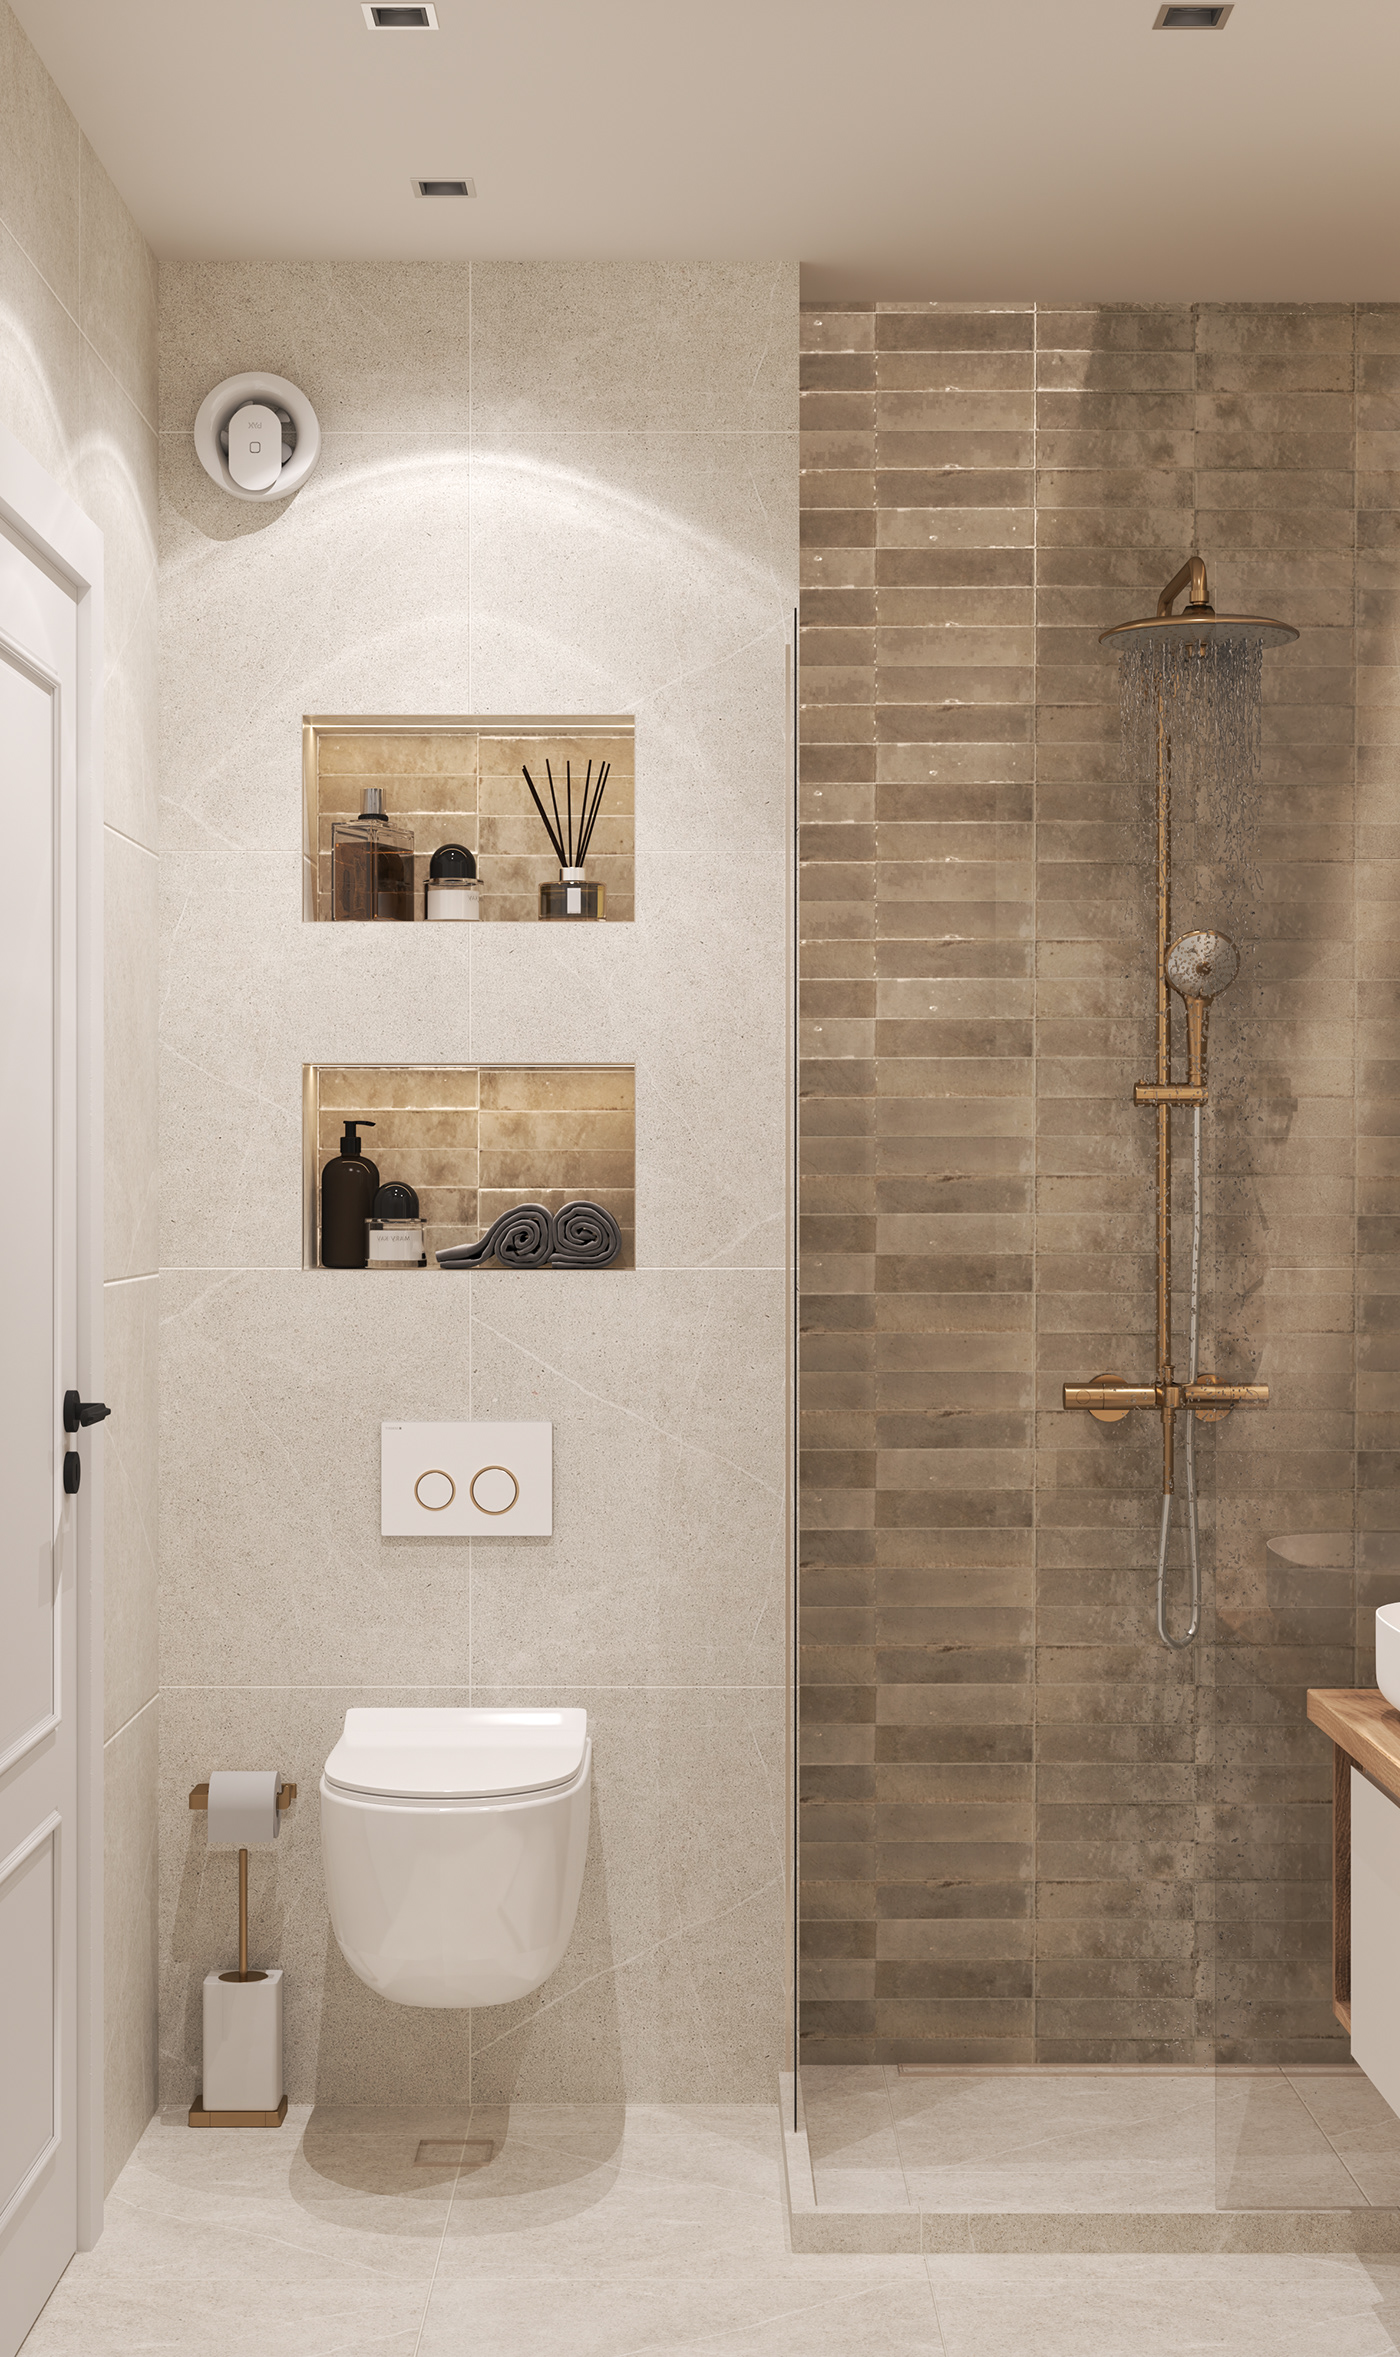 bathroom design interior design  visualization Render architecture modern 3ds max vray дизайн интерьера Визуализация интерьера